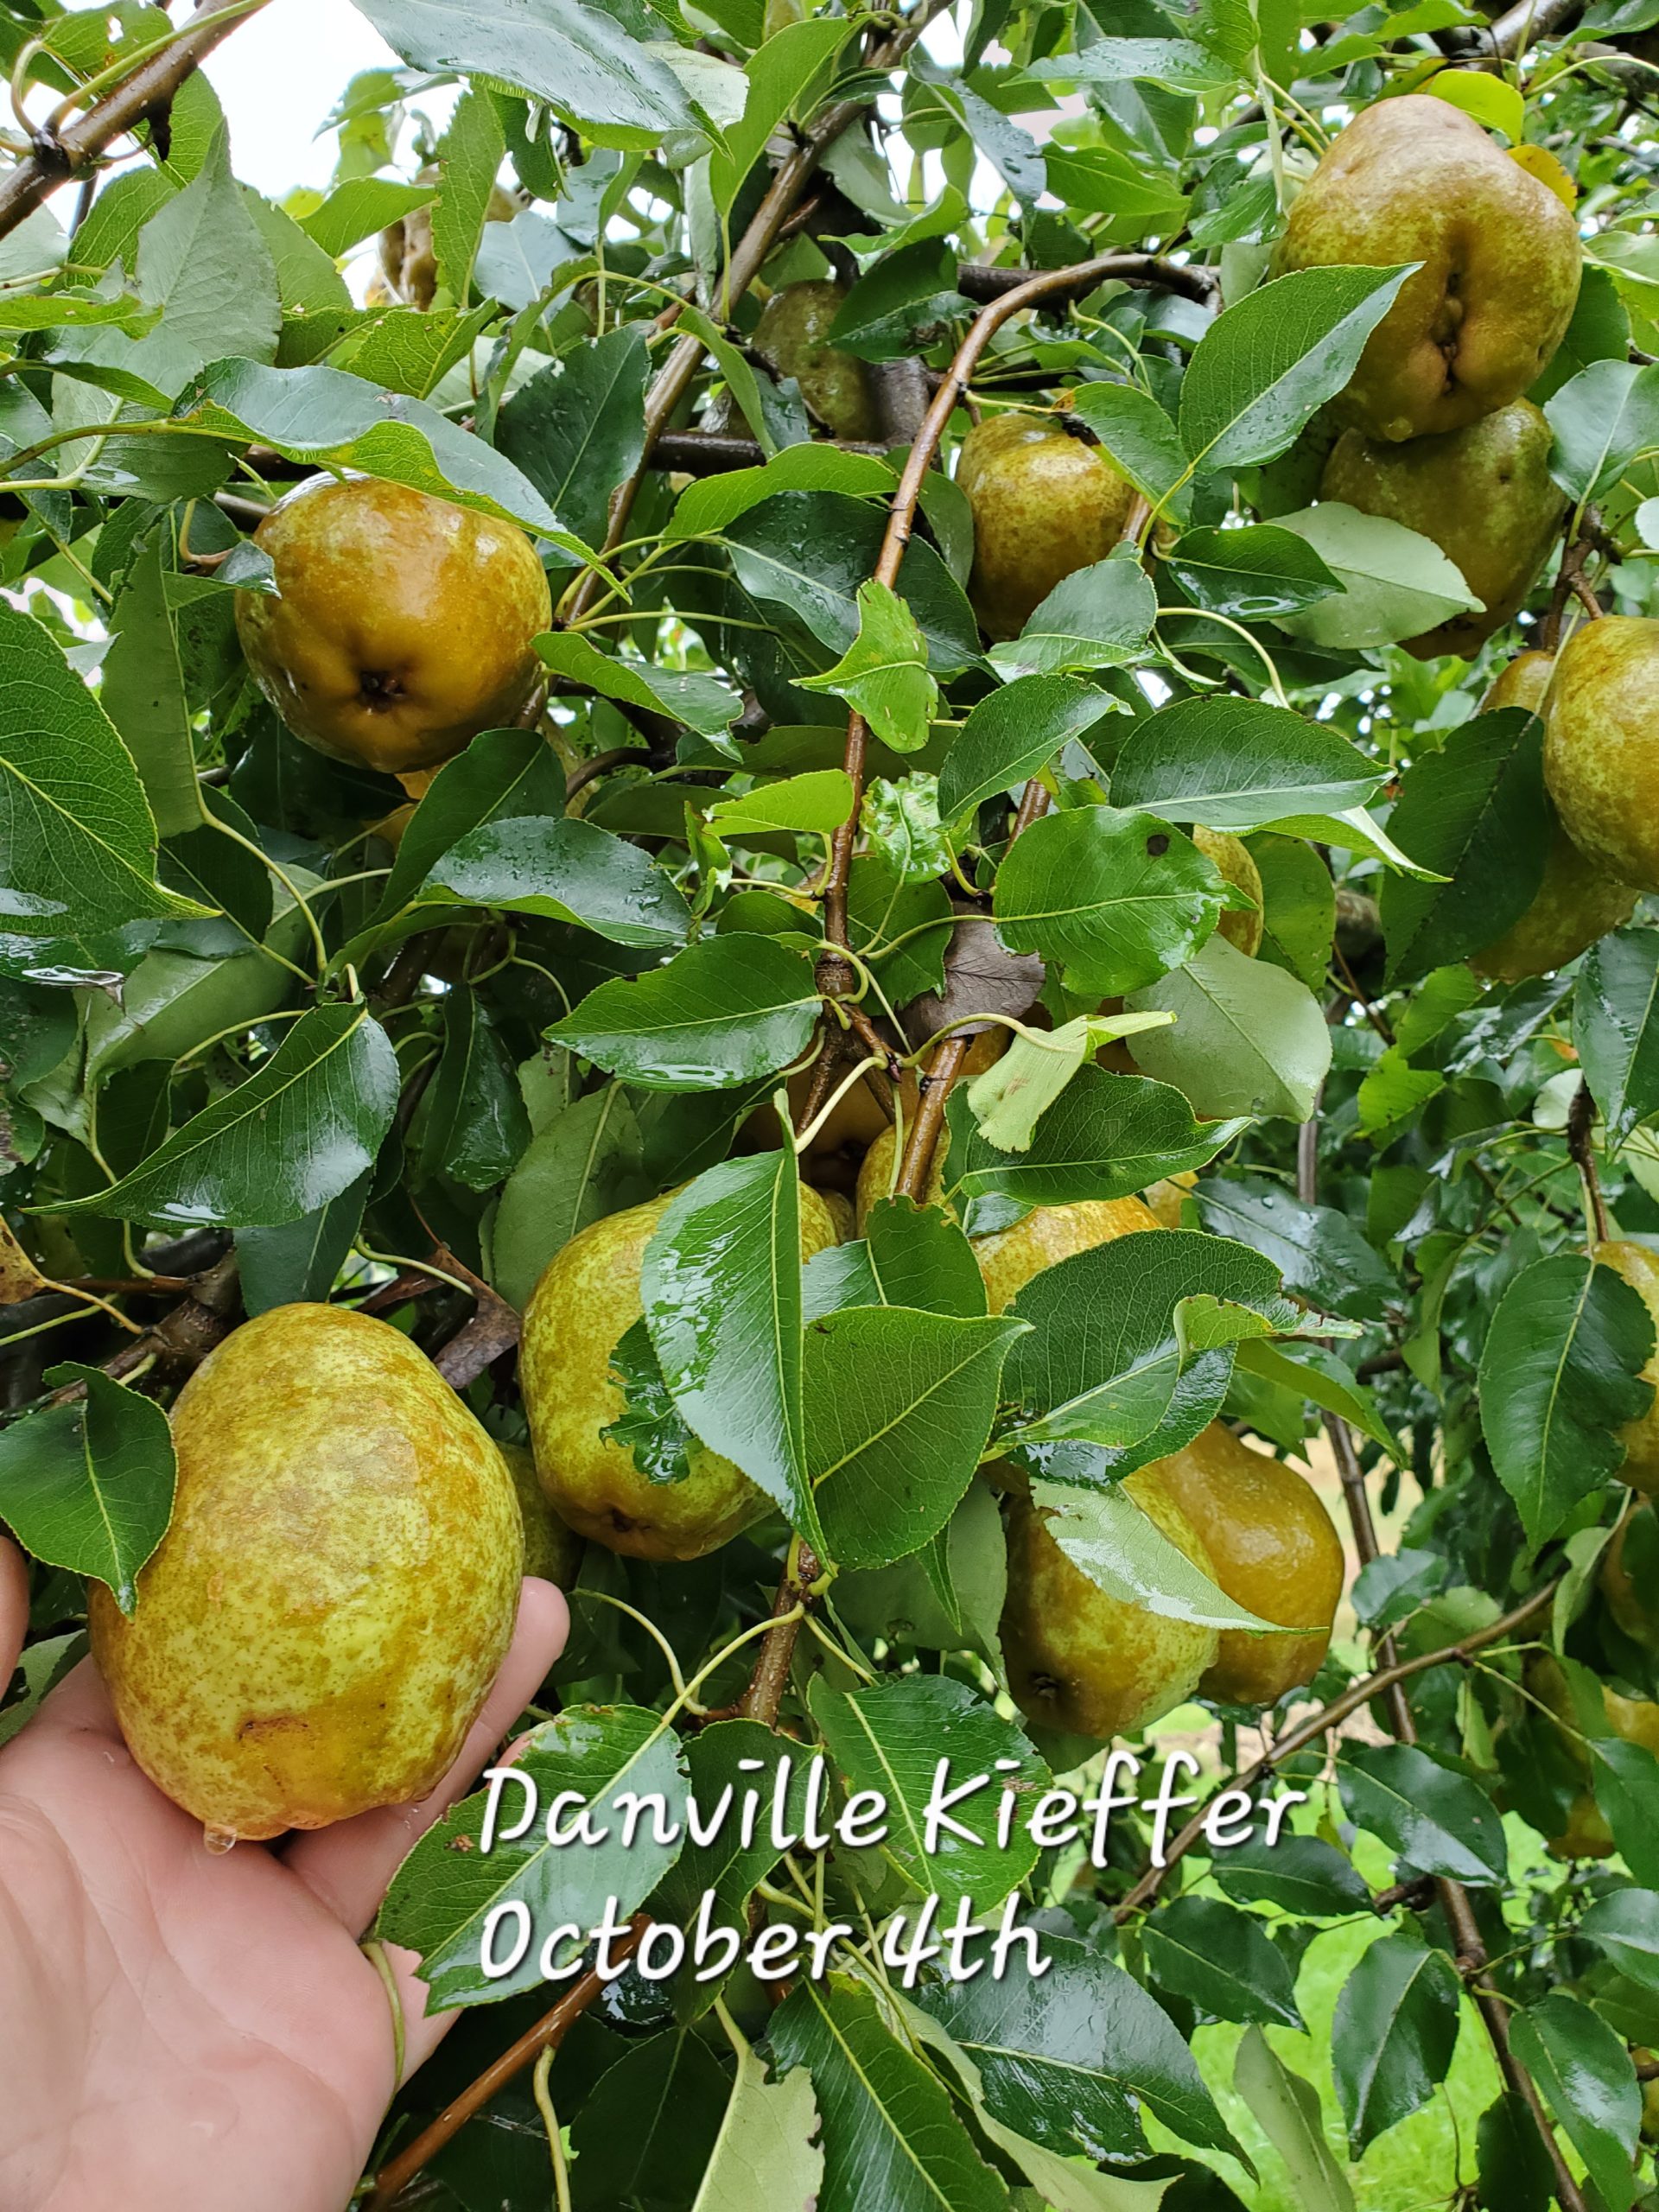 Danville Kieffer Pear